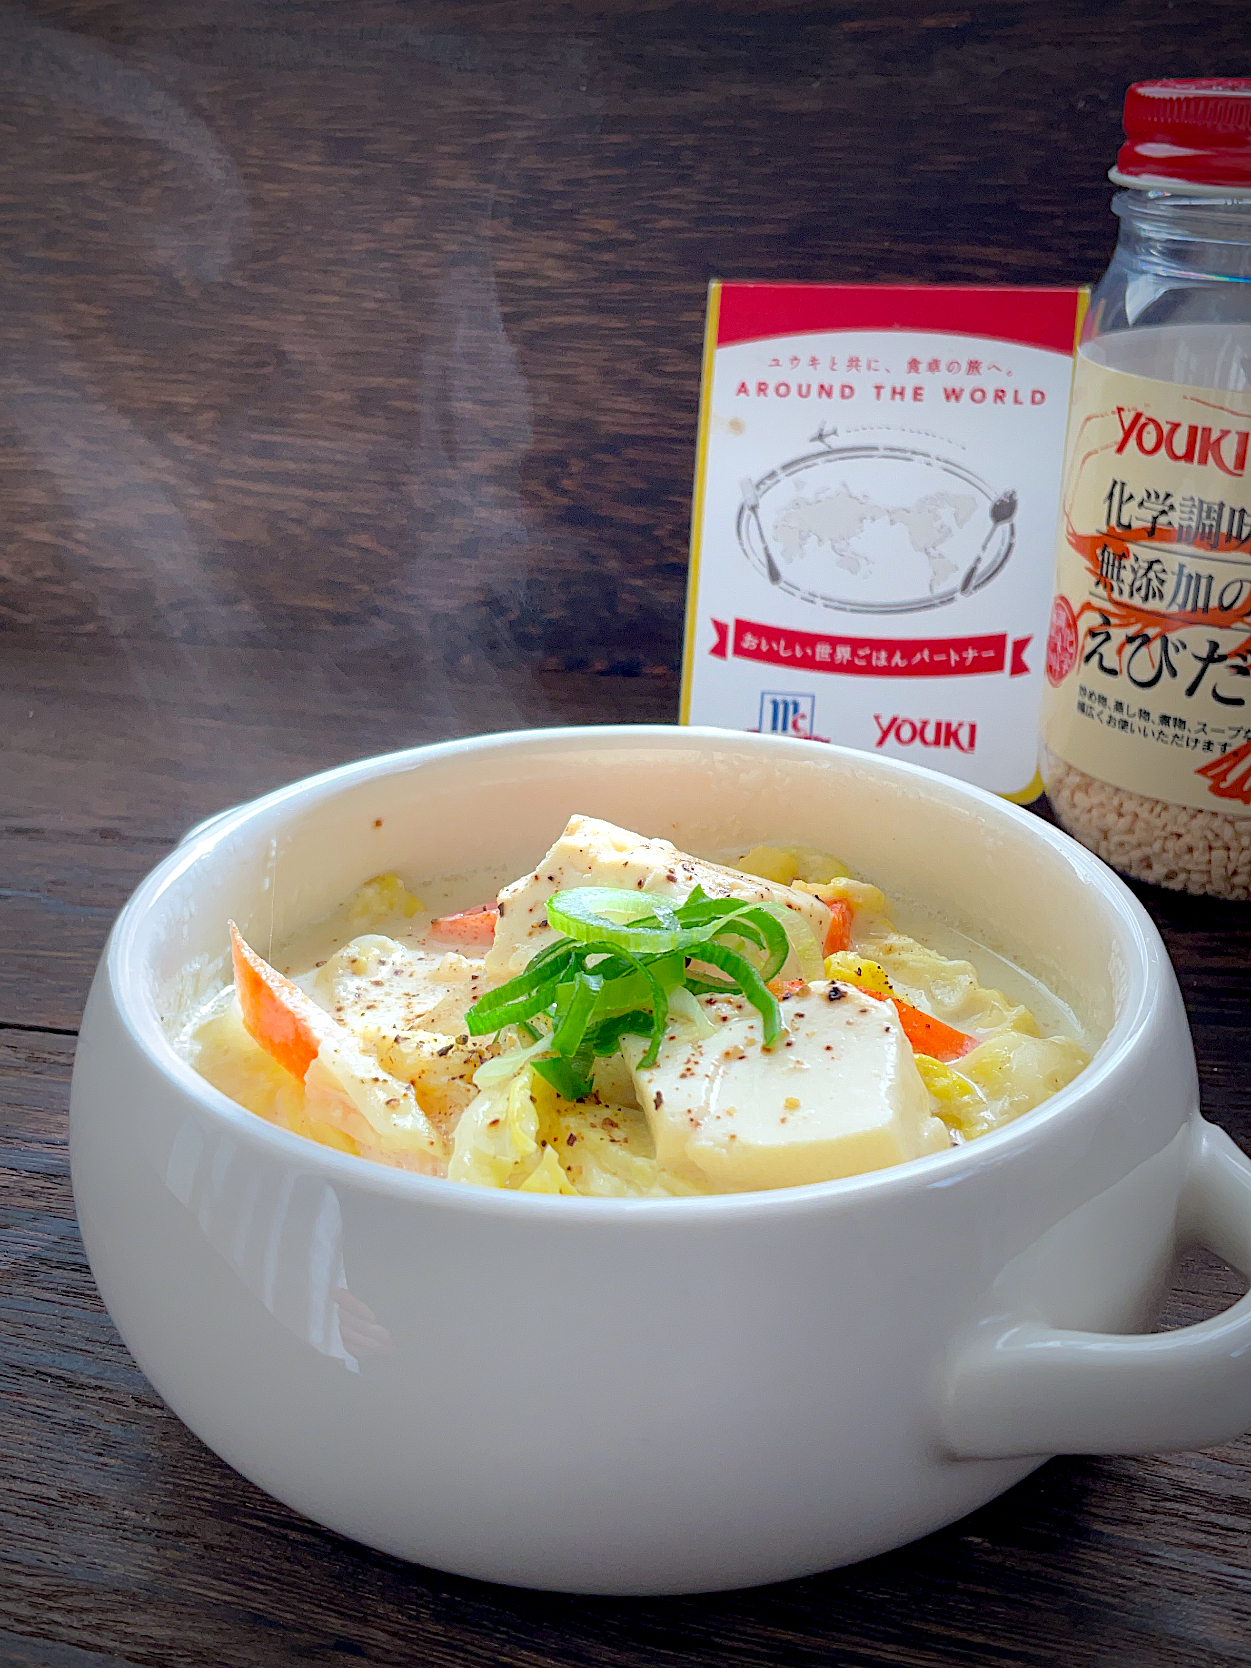 おいしい世界ごはんパートナー🌍
✨ワールド調味料で正月明け身体にやさしいごはん✨
化学調味料無添加のえびだしde白菜と豆腐の優しい豆乳スープ